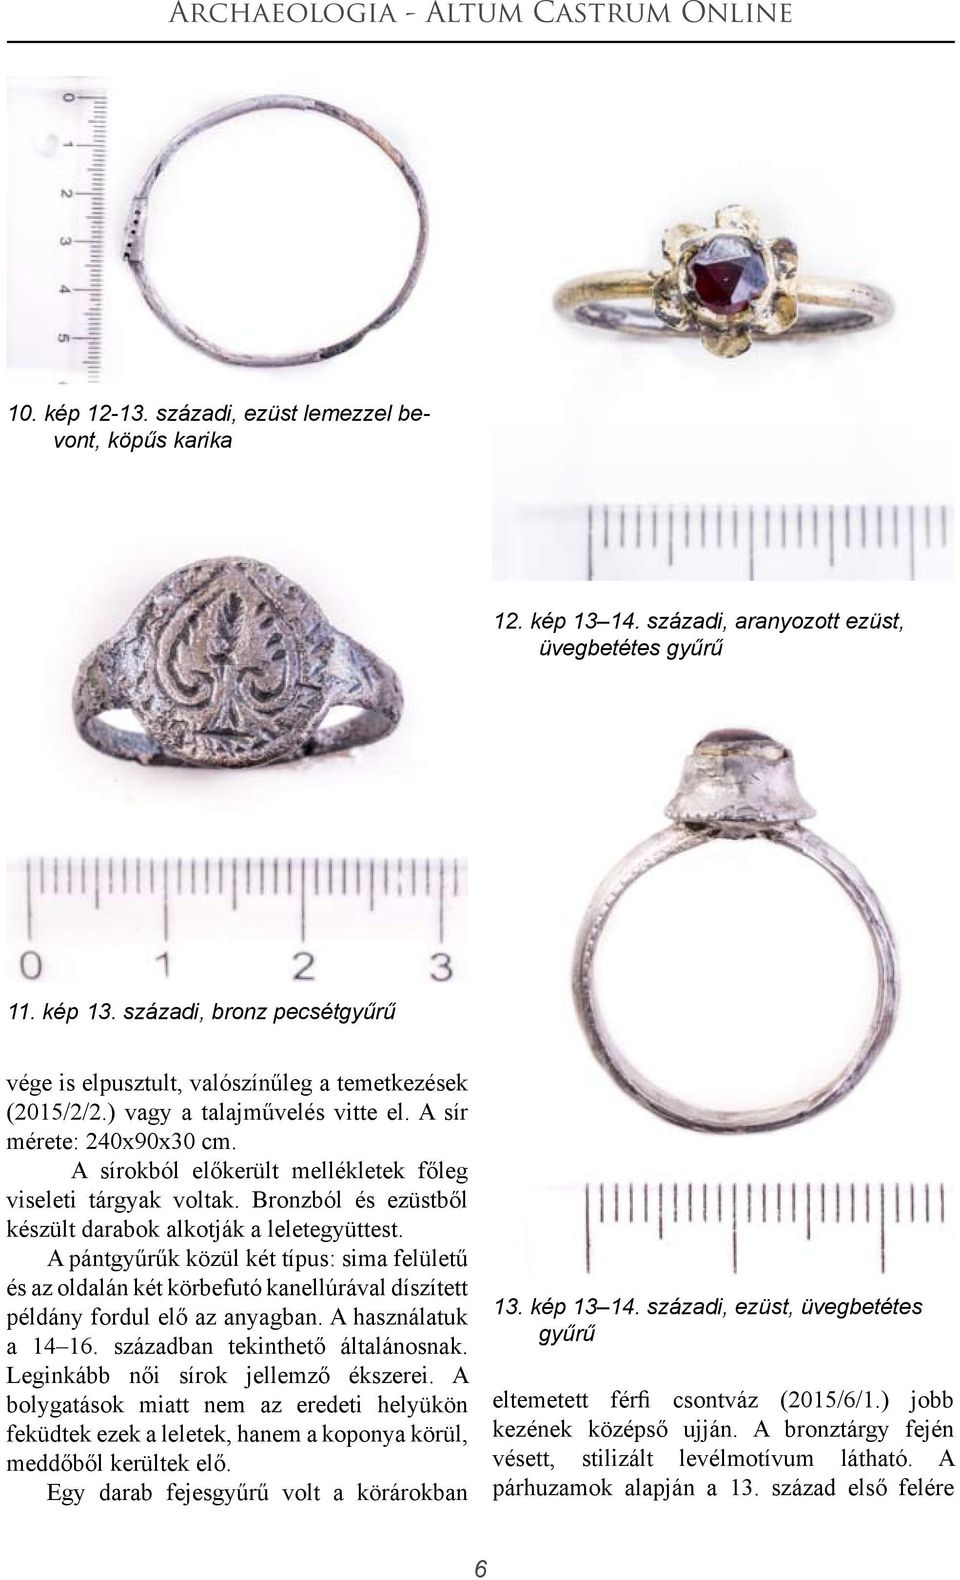 A pántgyűrűk közül két típus: sima felületű és az oldalán két körbefutó kanellúrával díszített példány fordul elő az anyagban. A használatuk a 14 16. században tekinthető általánosnak.